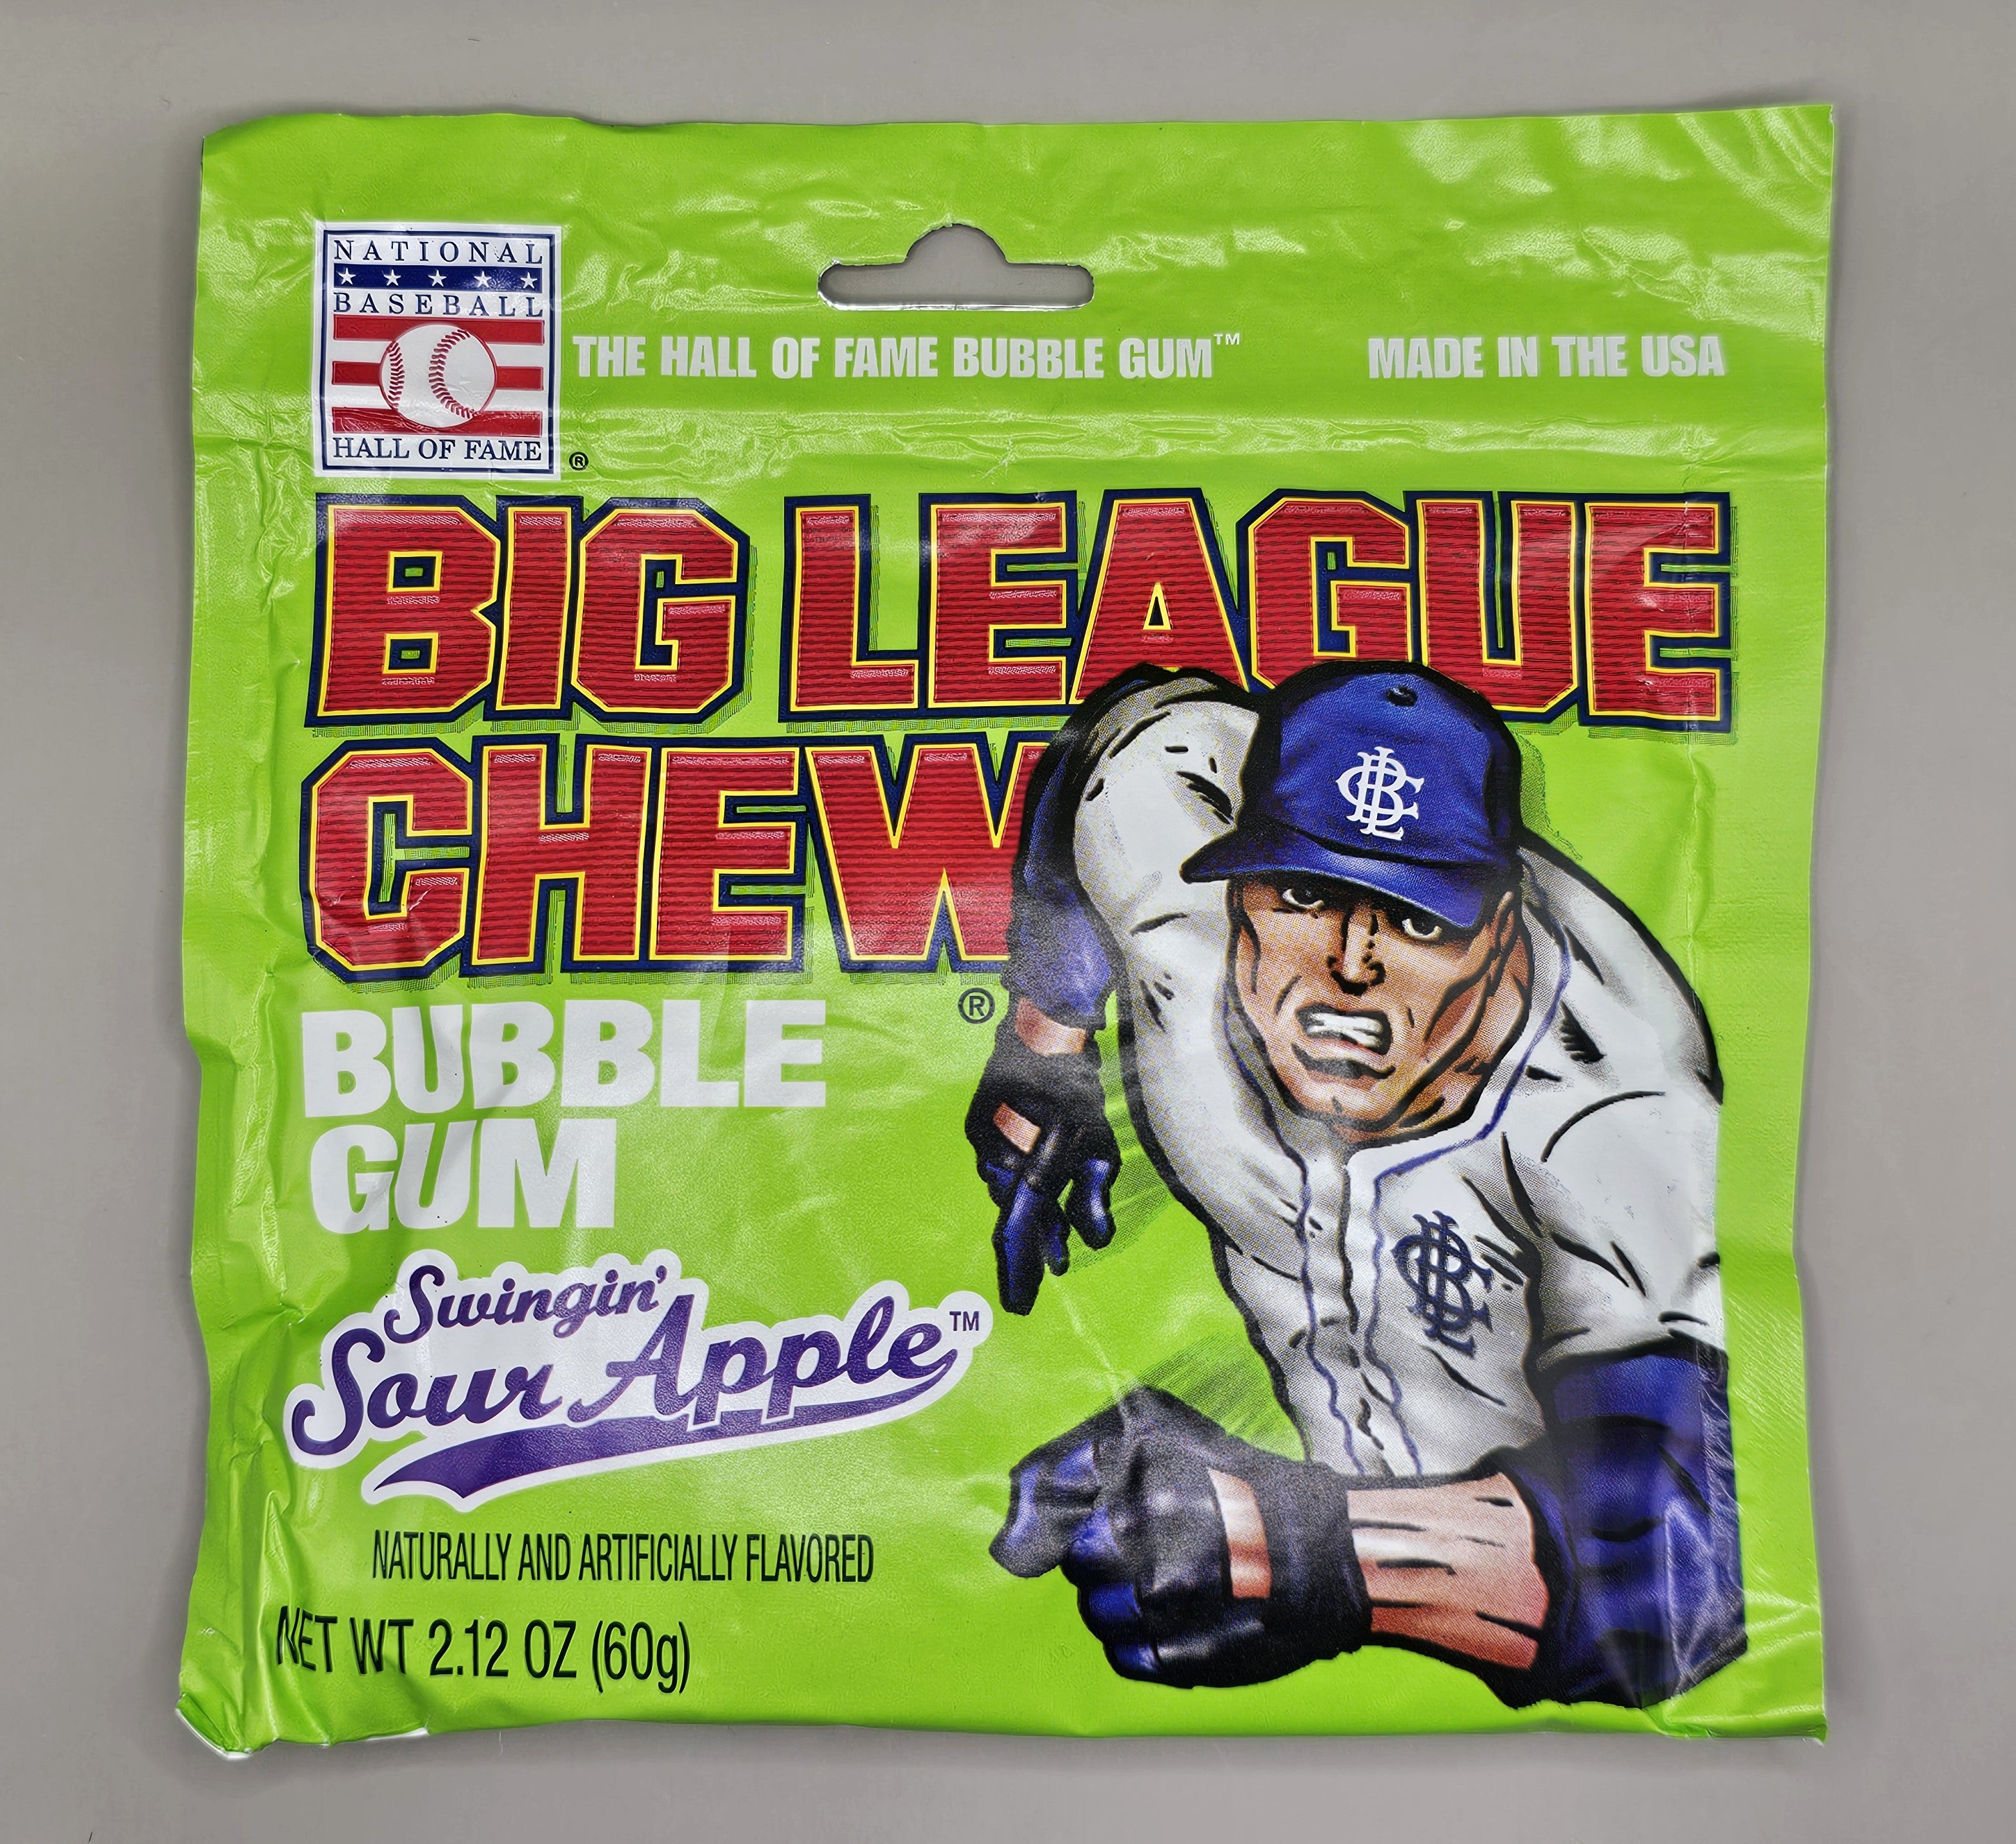 Sour apple big league chew.